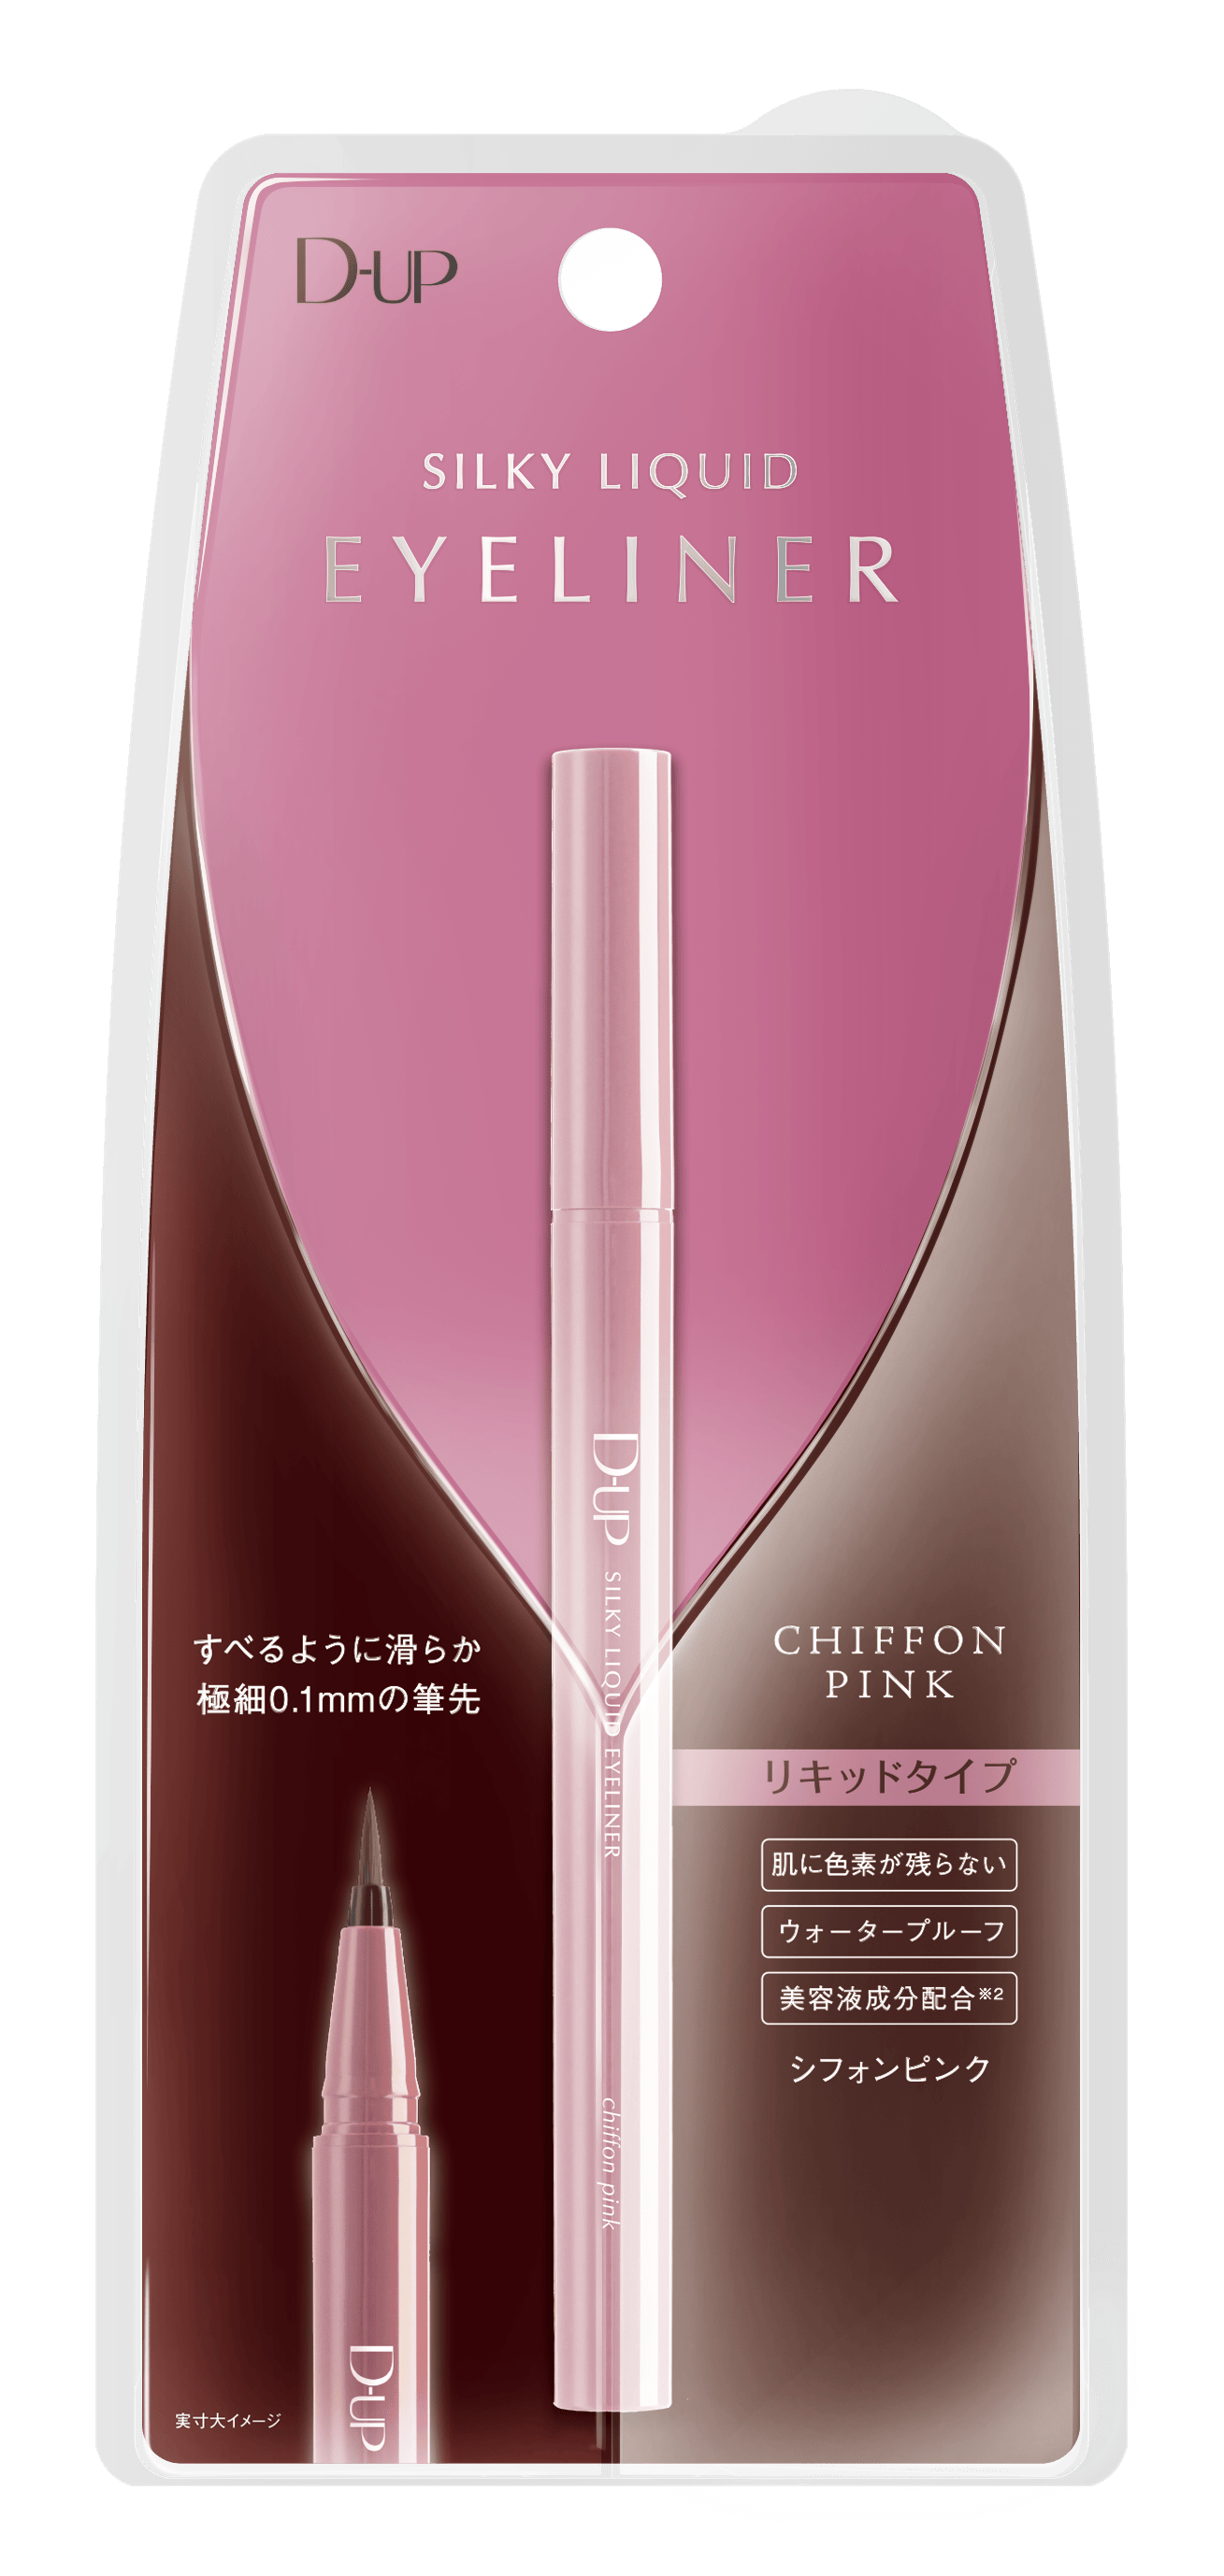 D-UP 絲滑特濃防水眼線液 (霧紗粉) Sliky Liquid Eyeliner Pink Choco